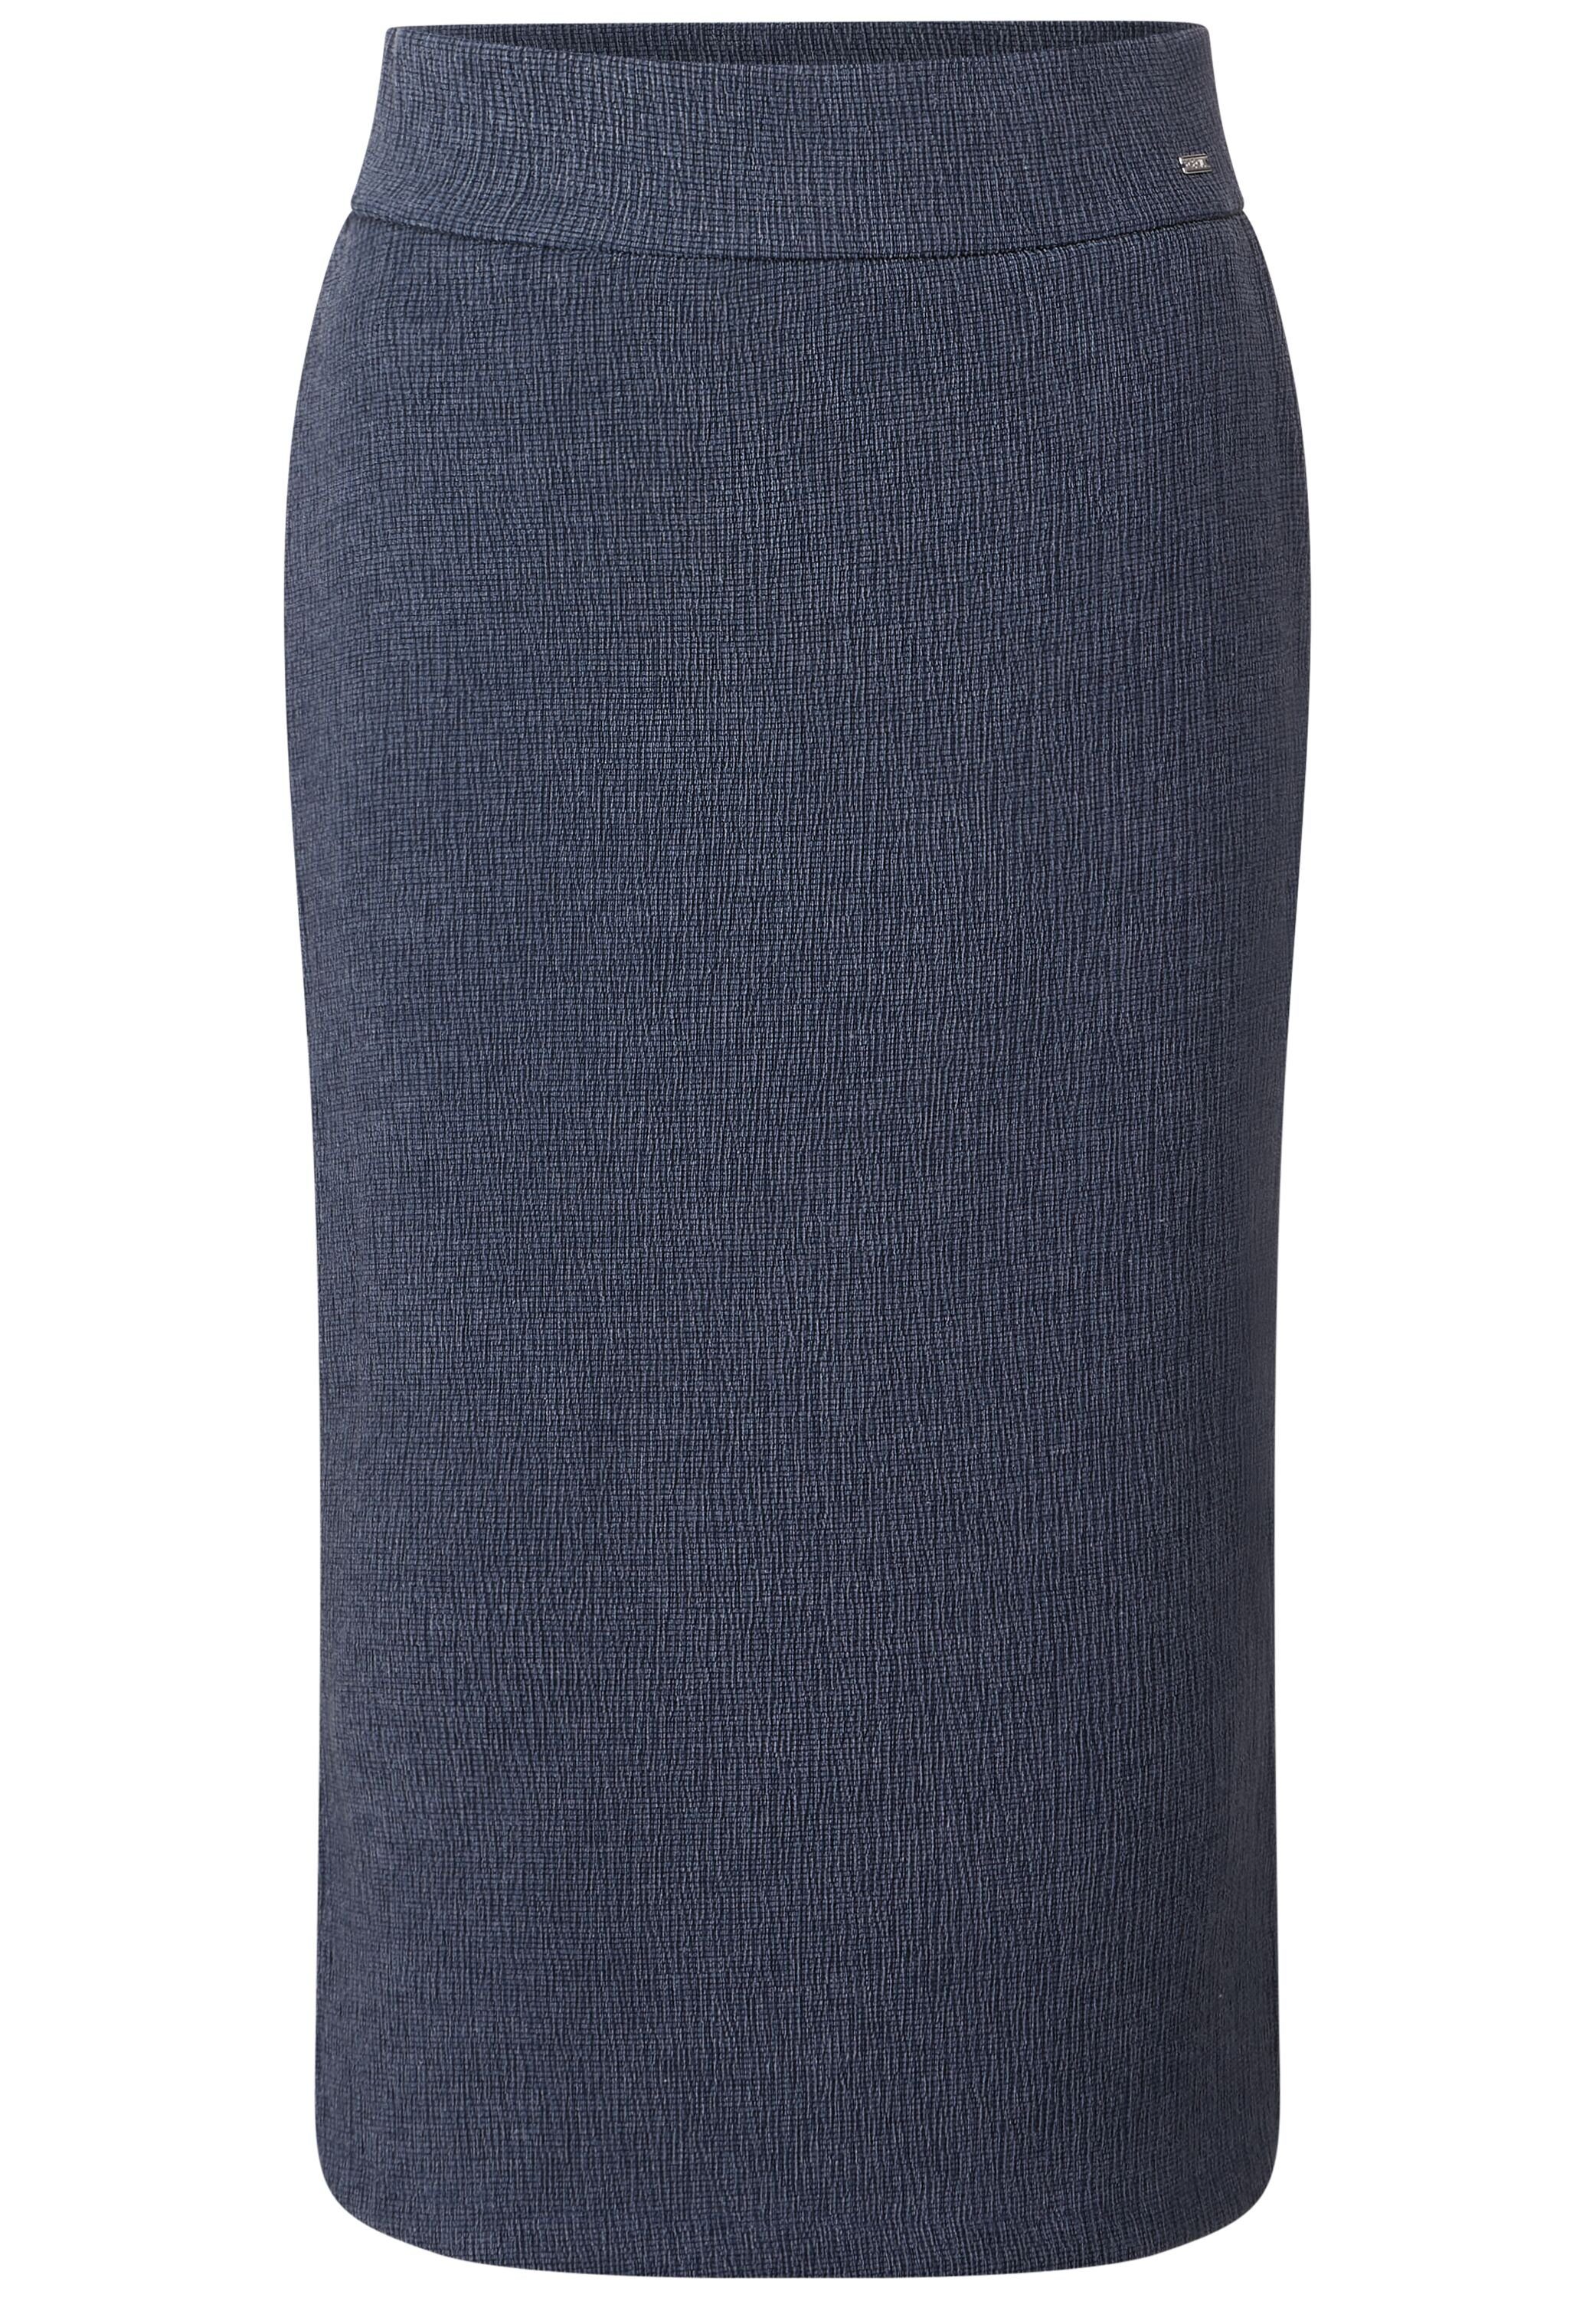 Cecil Lang Röcke für Damen online kaufen | OTTO | Faltenröcke